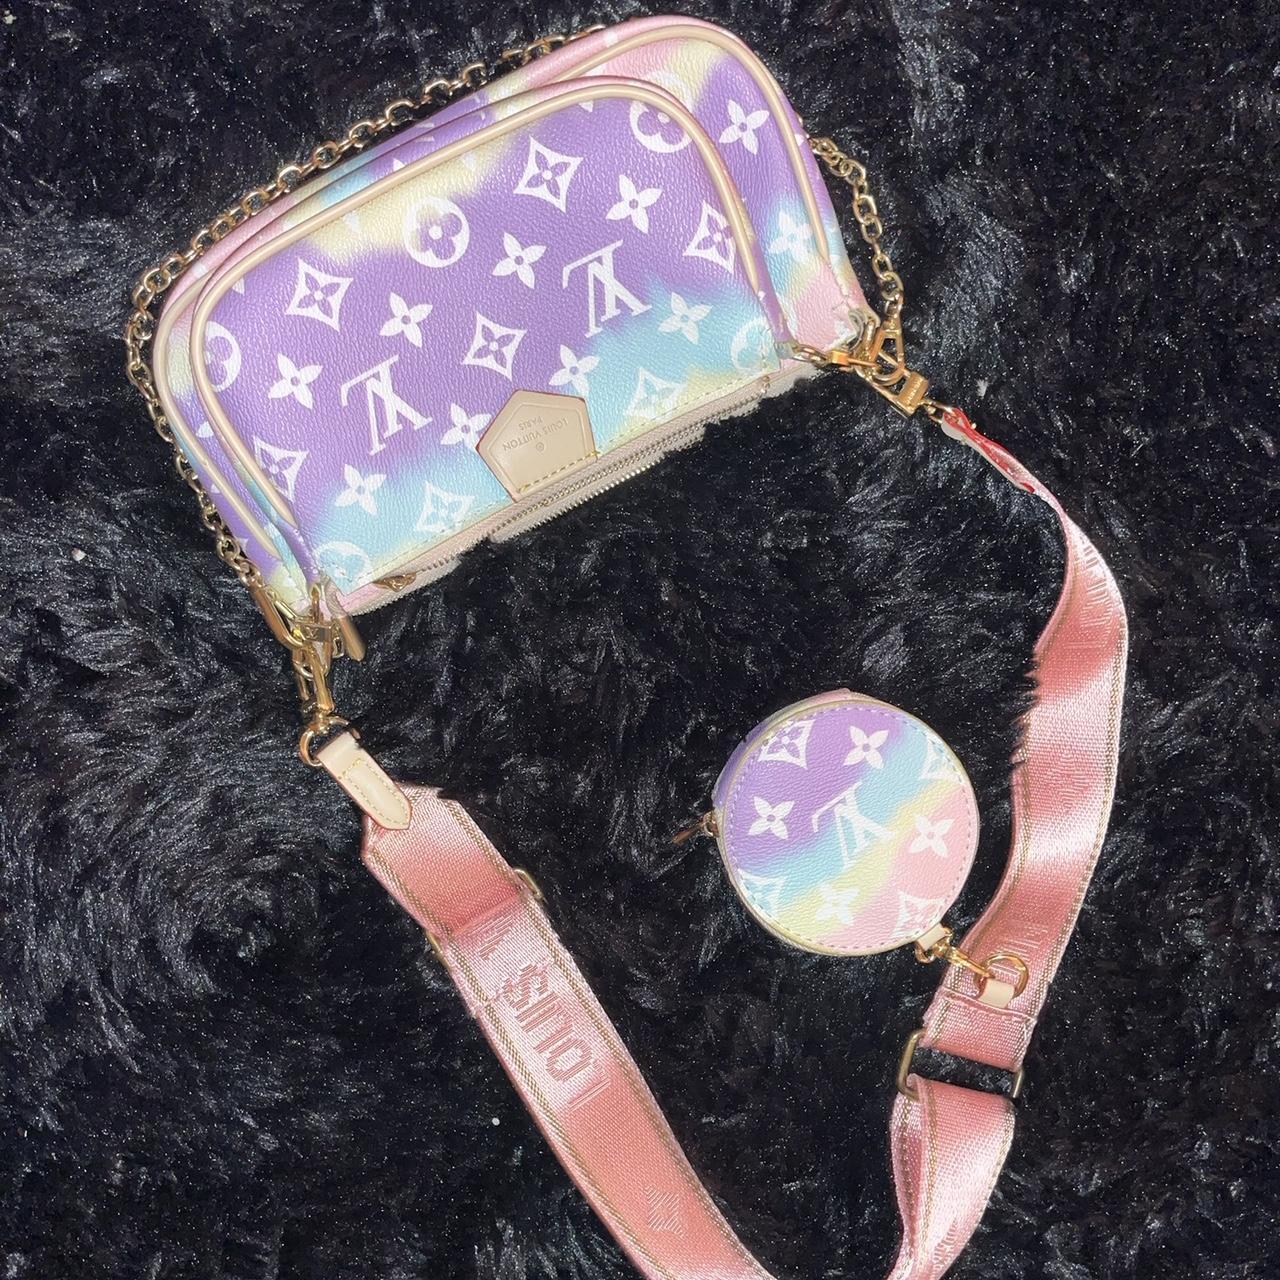 LV cotton candy purse - Depop